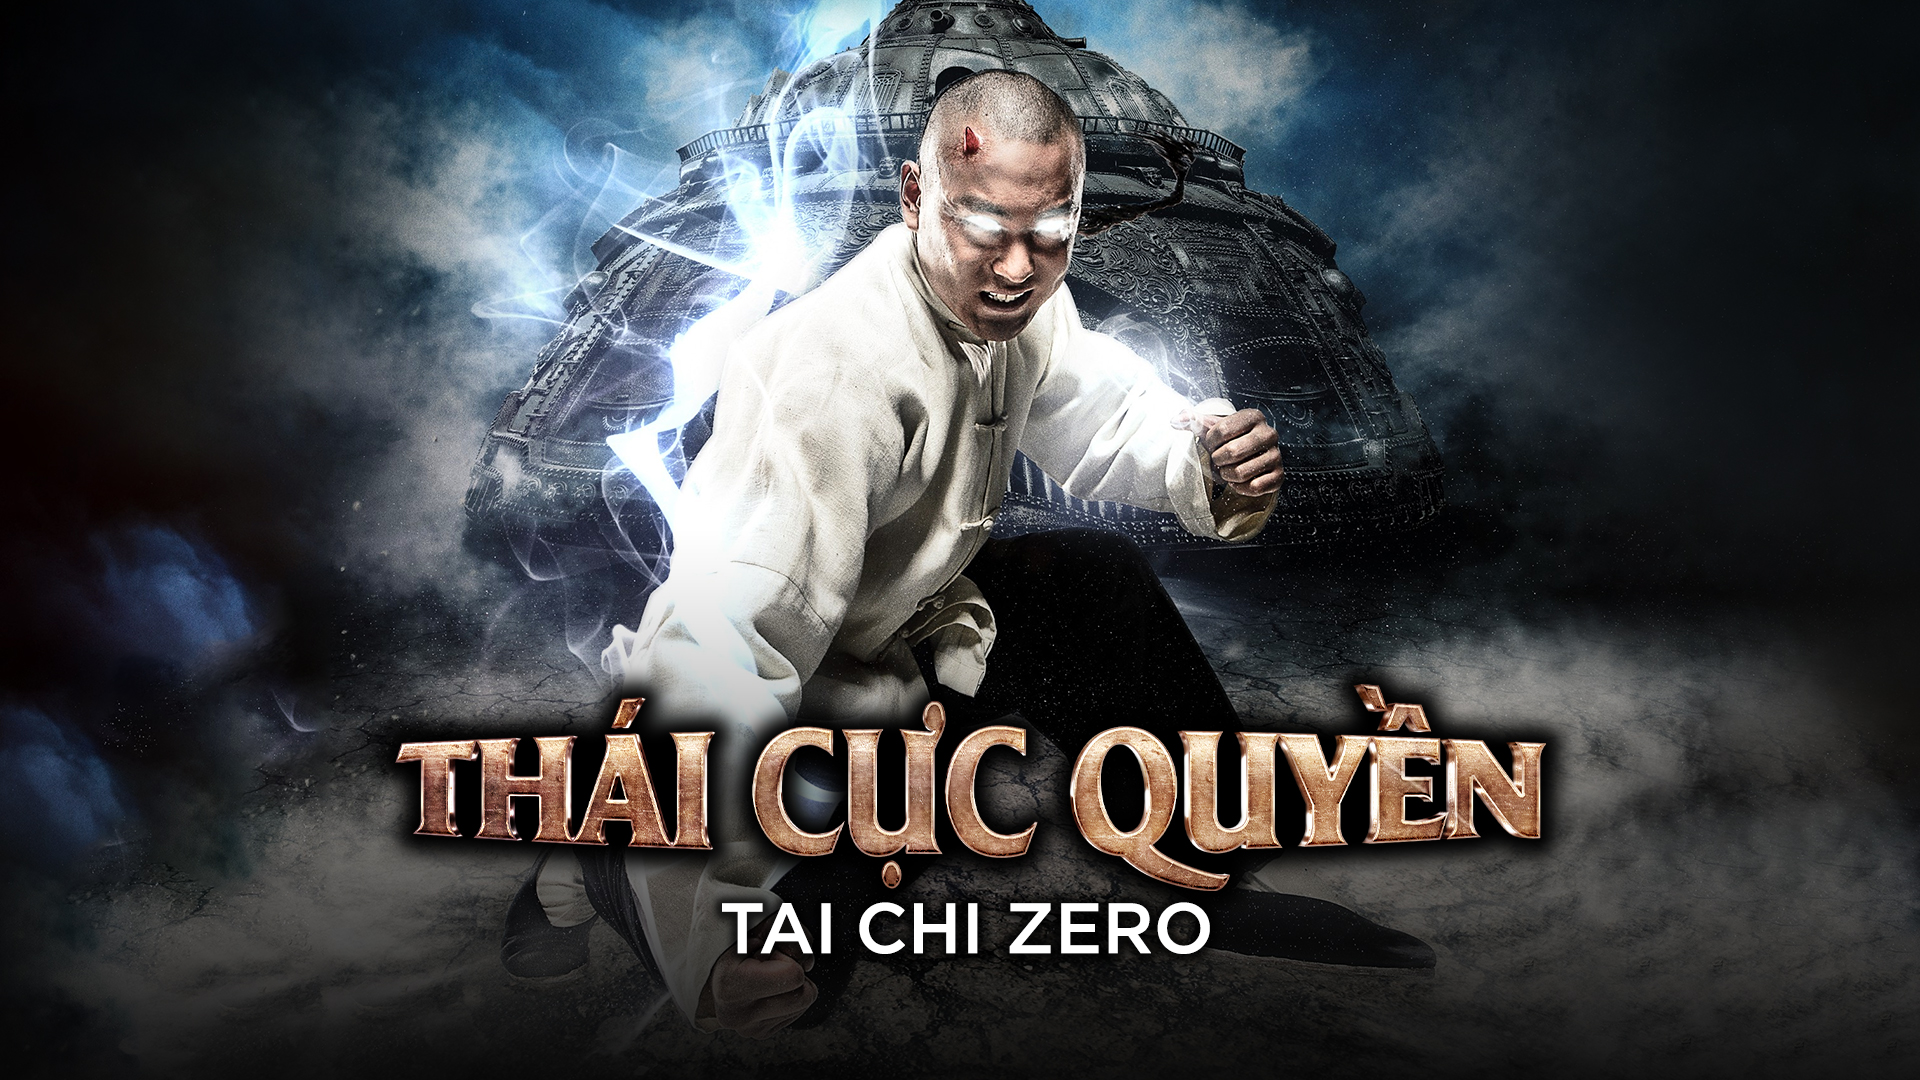 72. Phim Tai Chi Zero (2012) - Thiếu Lâm Tự: Vị Vua Thông Linh (2012)